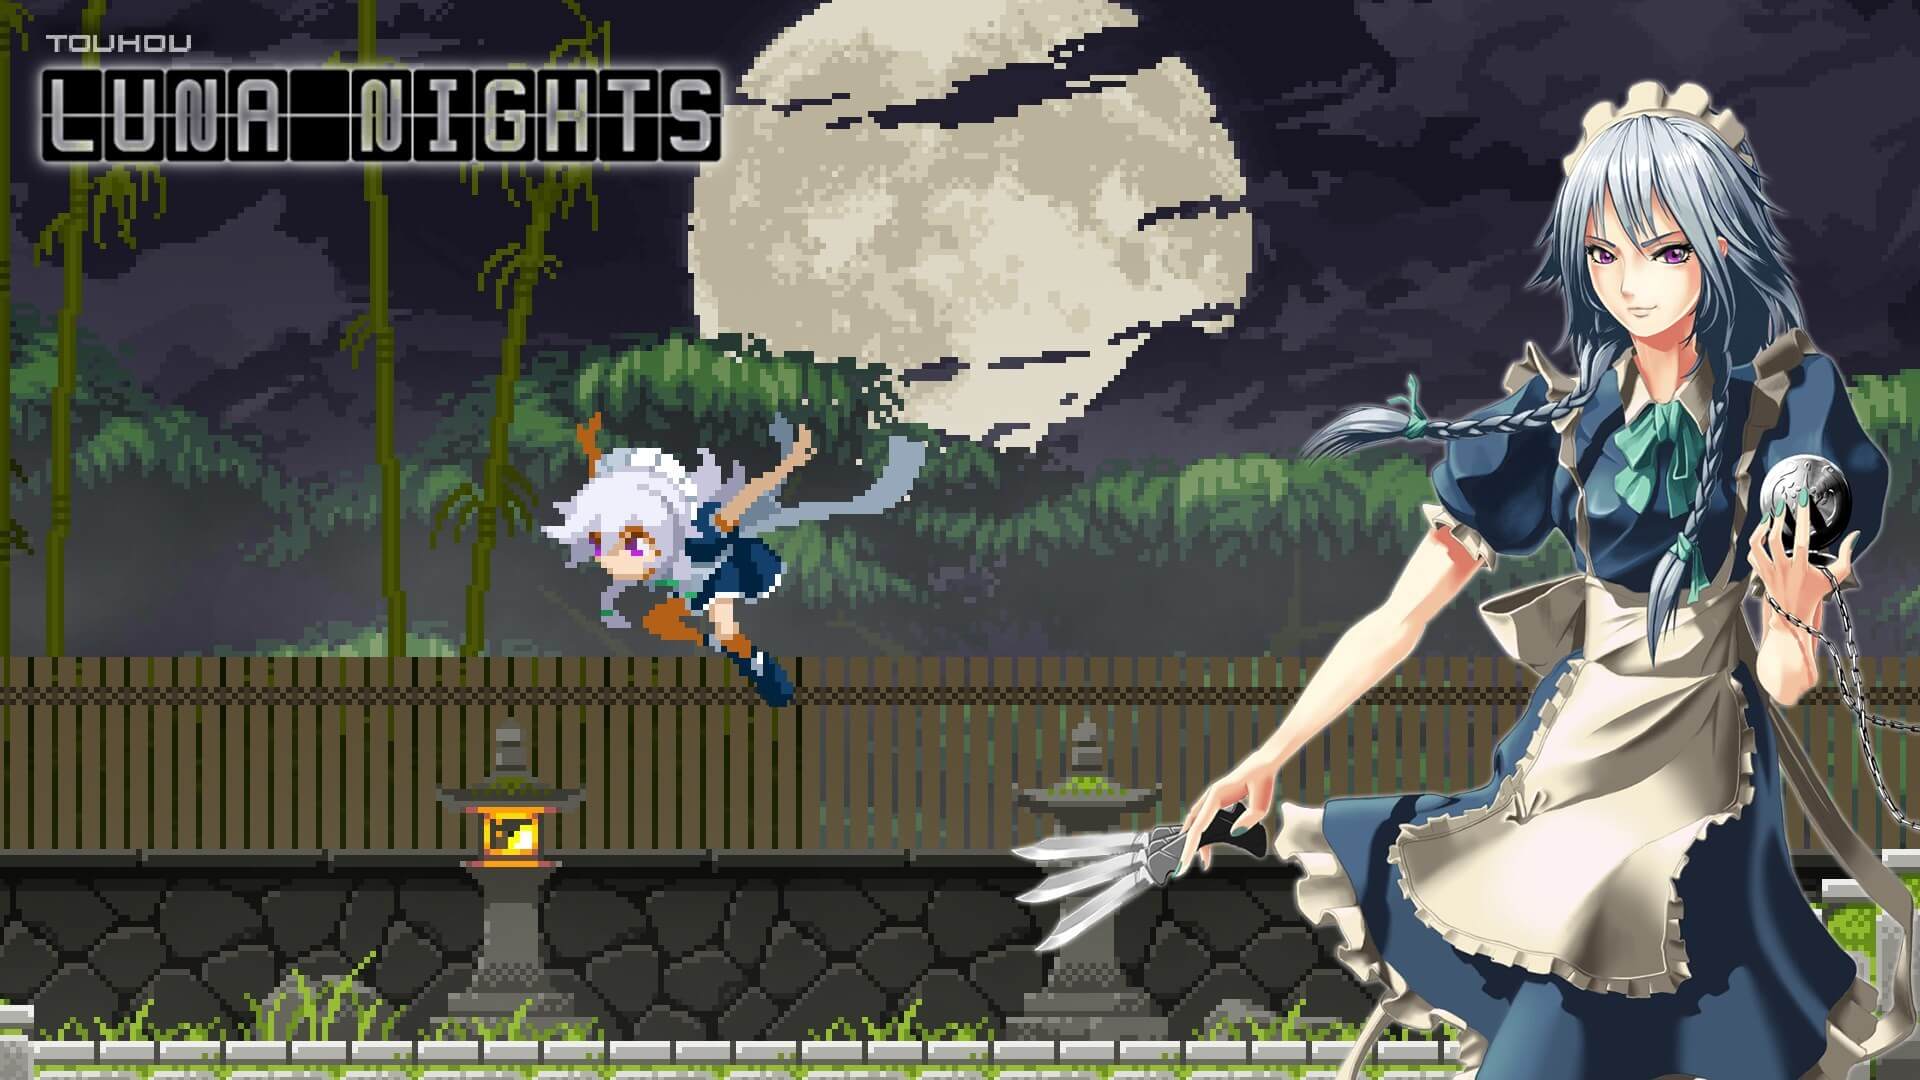 Touhou Luna Nights Free PC Download